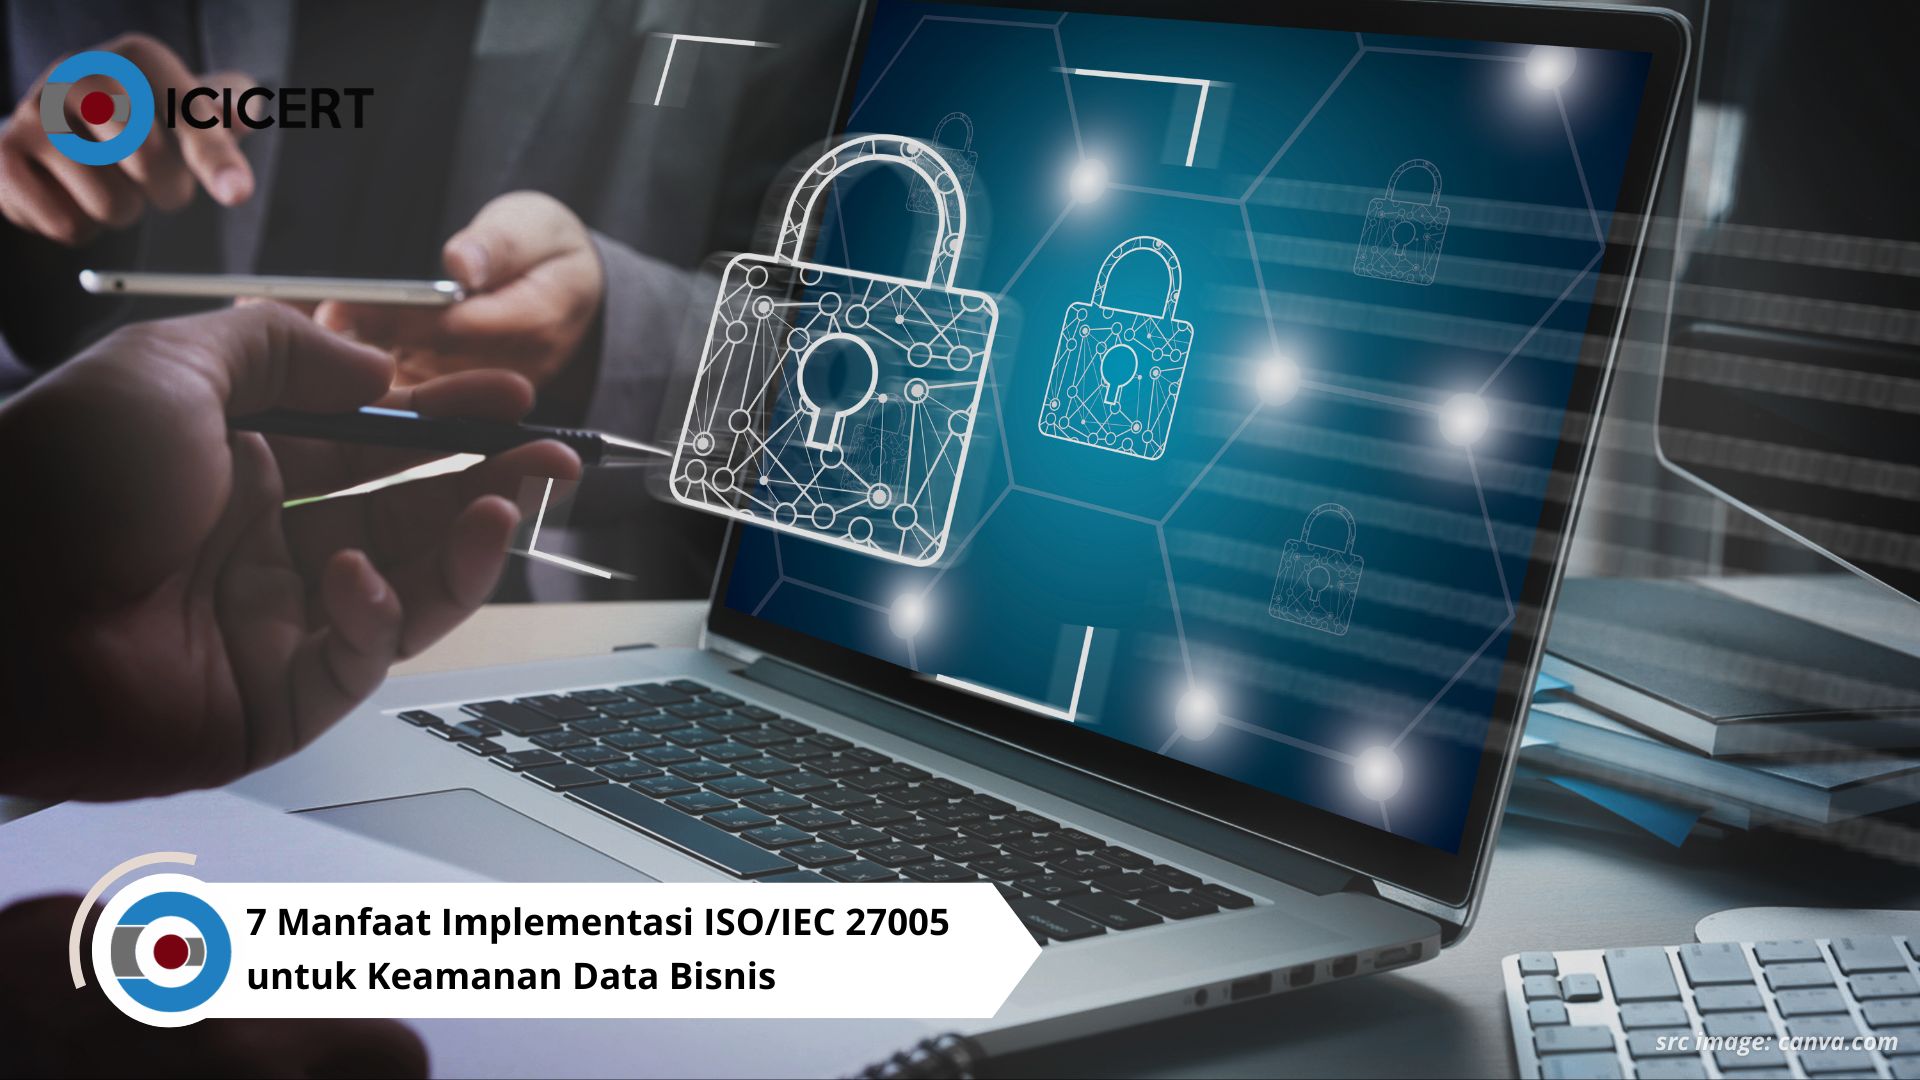 7 Manfaat Implementasi ISO/IEC 27005 untuk Keamanan Data Bisnis